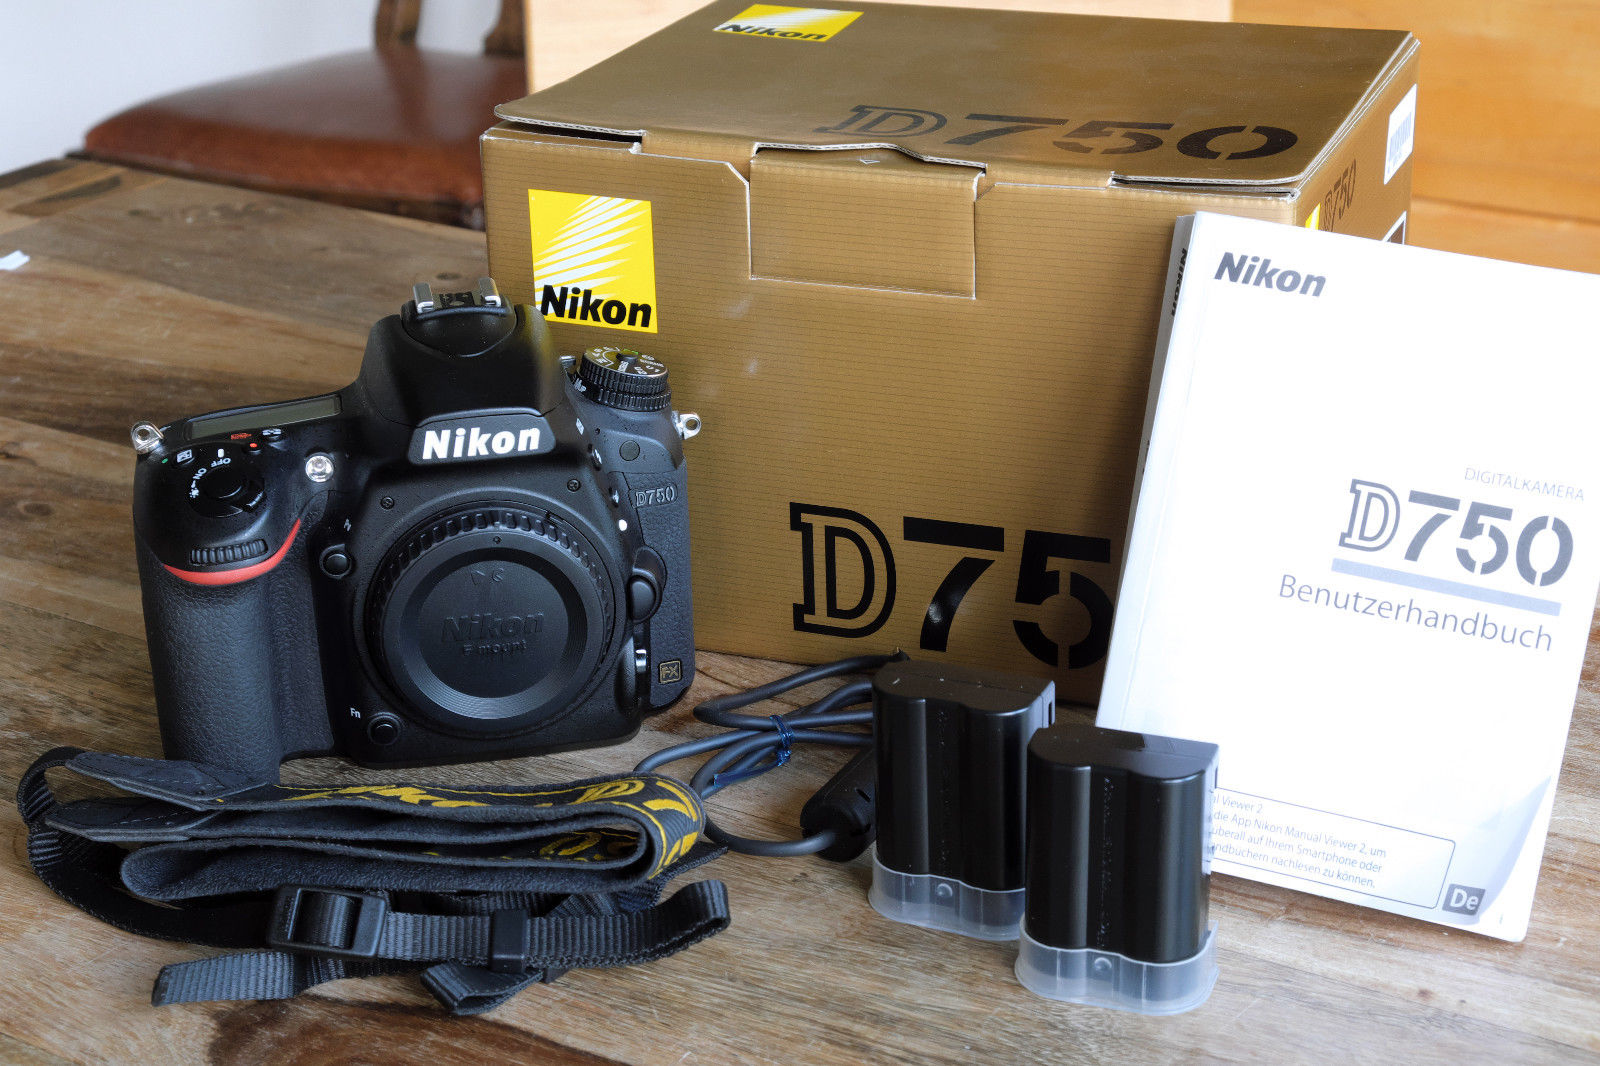 Nikon D750, einwandfreier Zustand, frisch inspiziert, OVP,  6000 Auslösungen